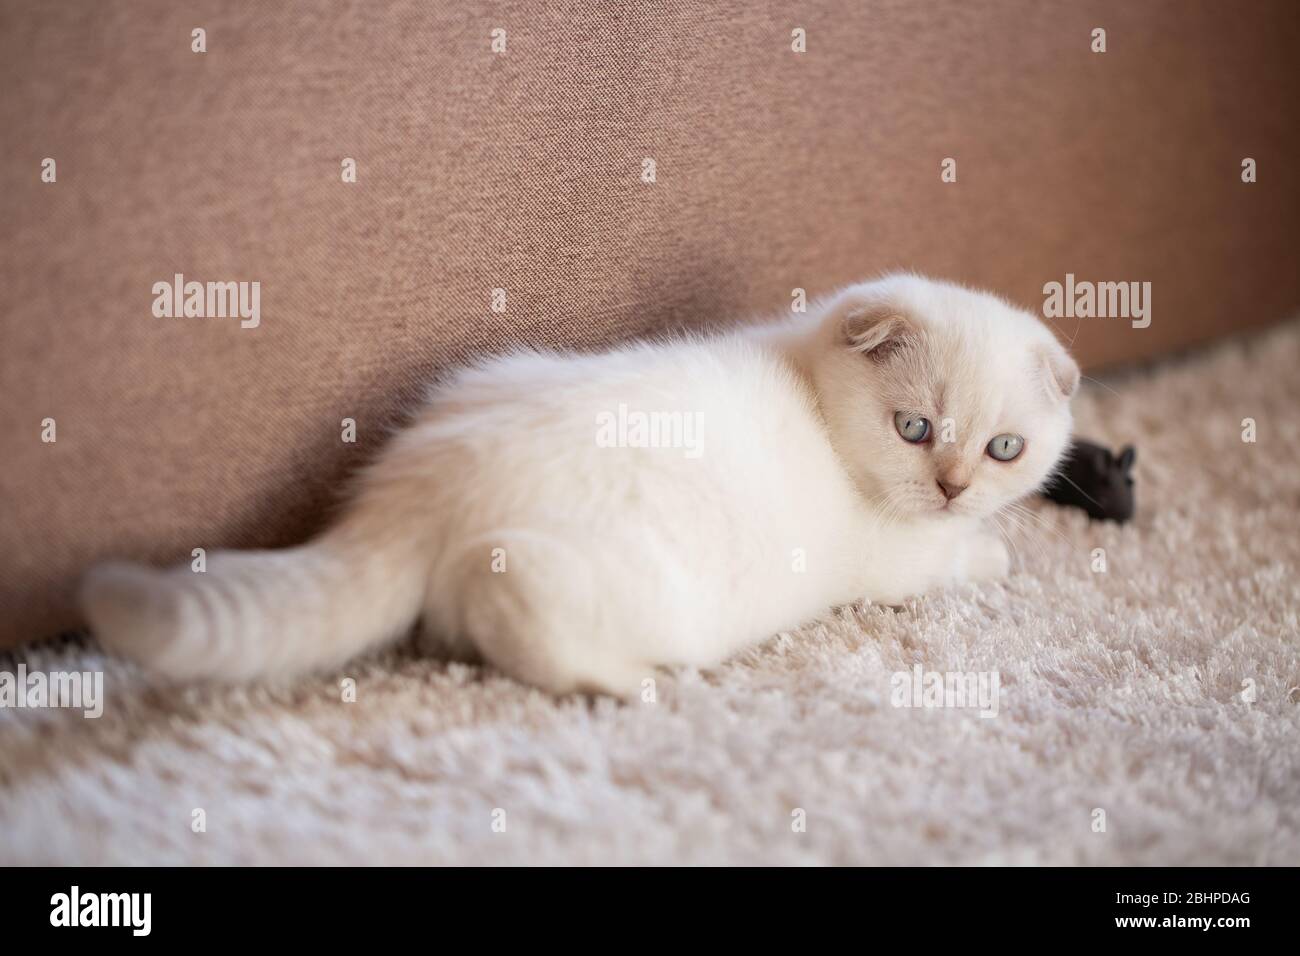 Un lindo gatito blanco está acostado en una alfombra suave en el suelo y jugando con un ratón de juguete. Foto de stock